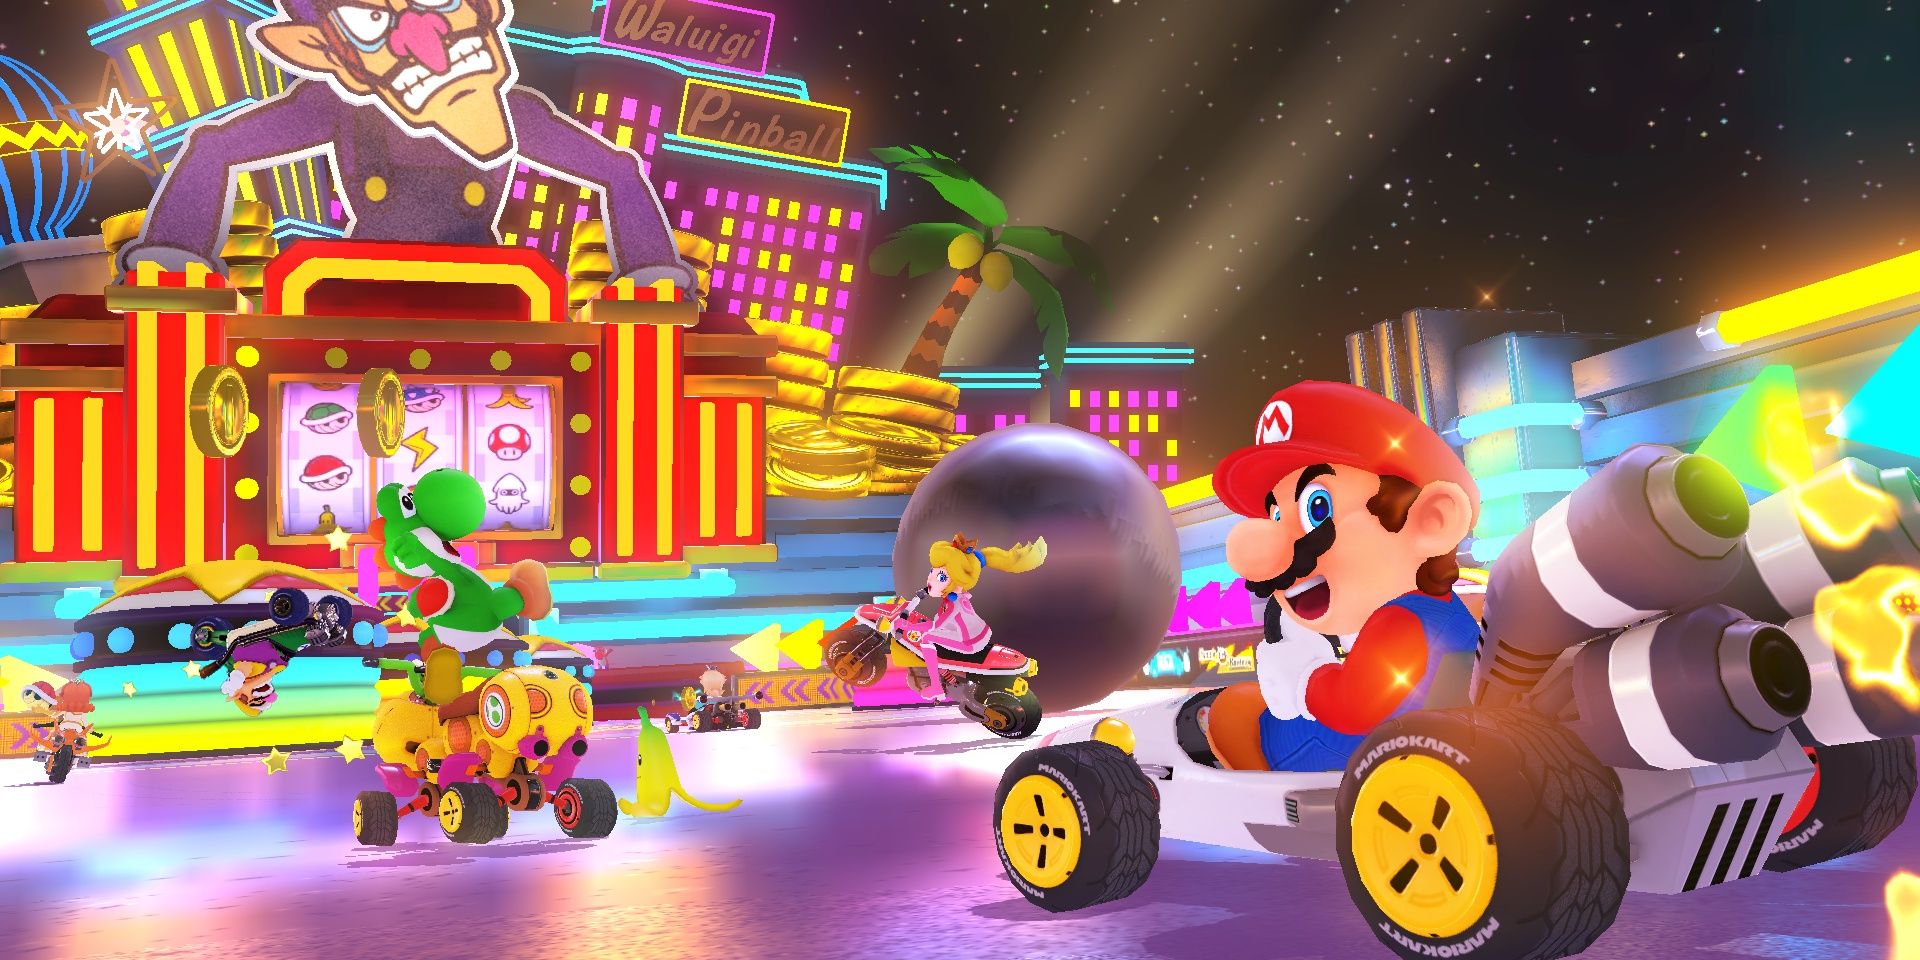 Mario, Yoshi Et Peach Font La Course Sur Le Parcours De Waluigi Dans Mario Kart 8